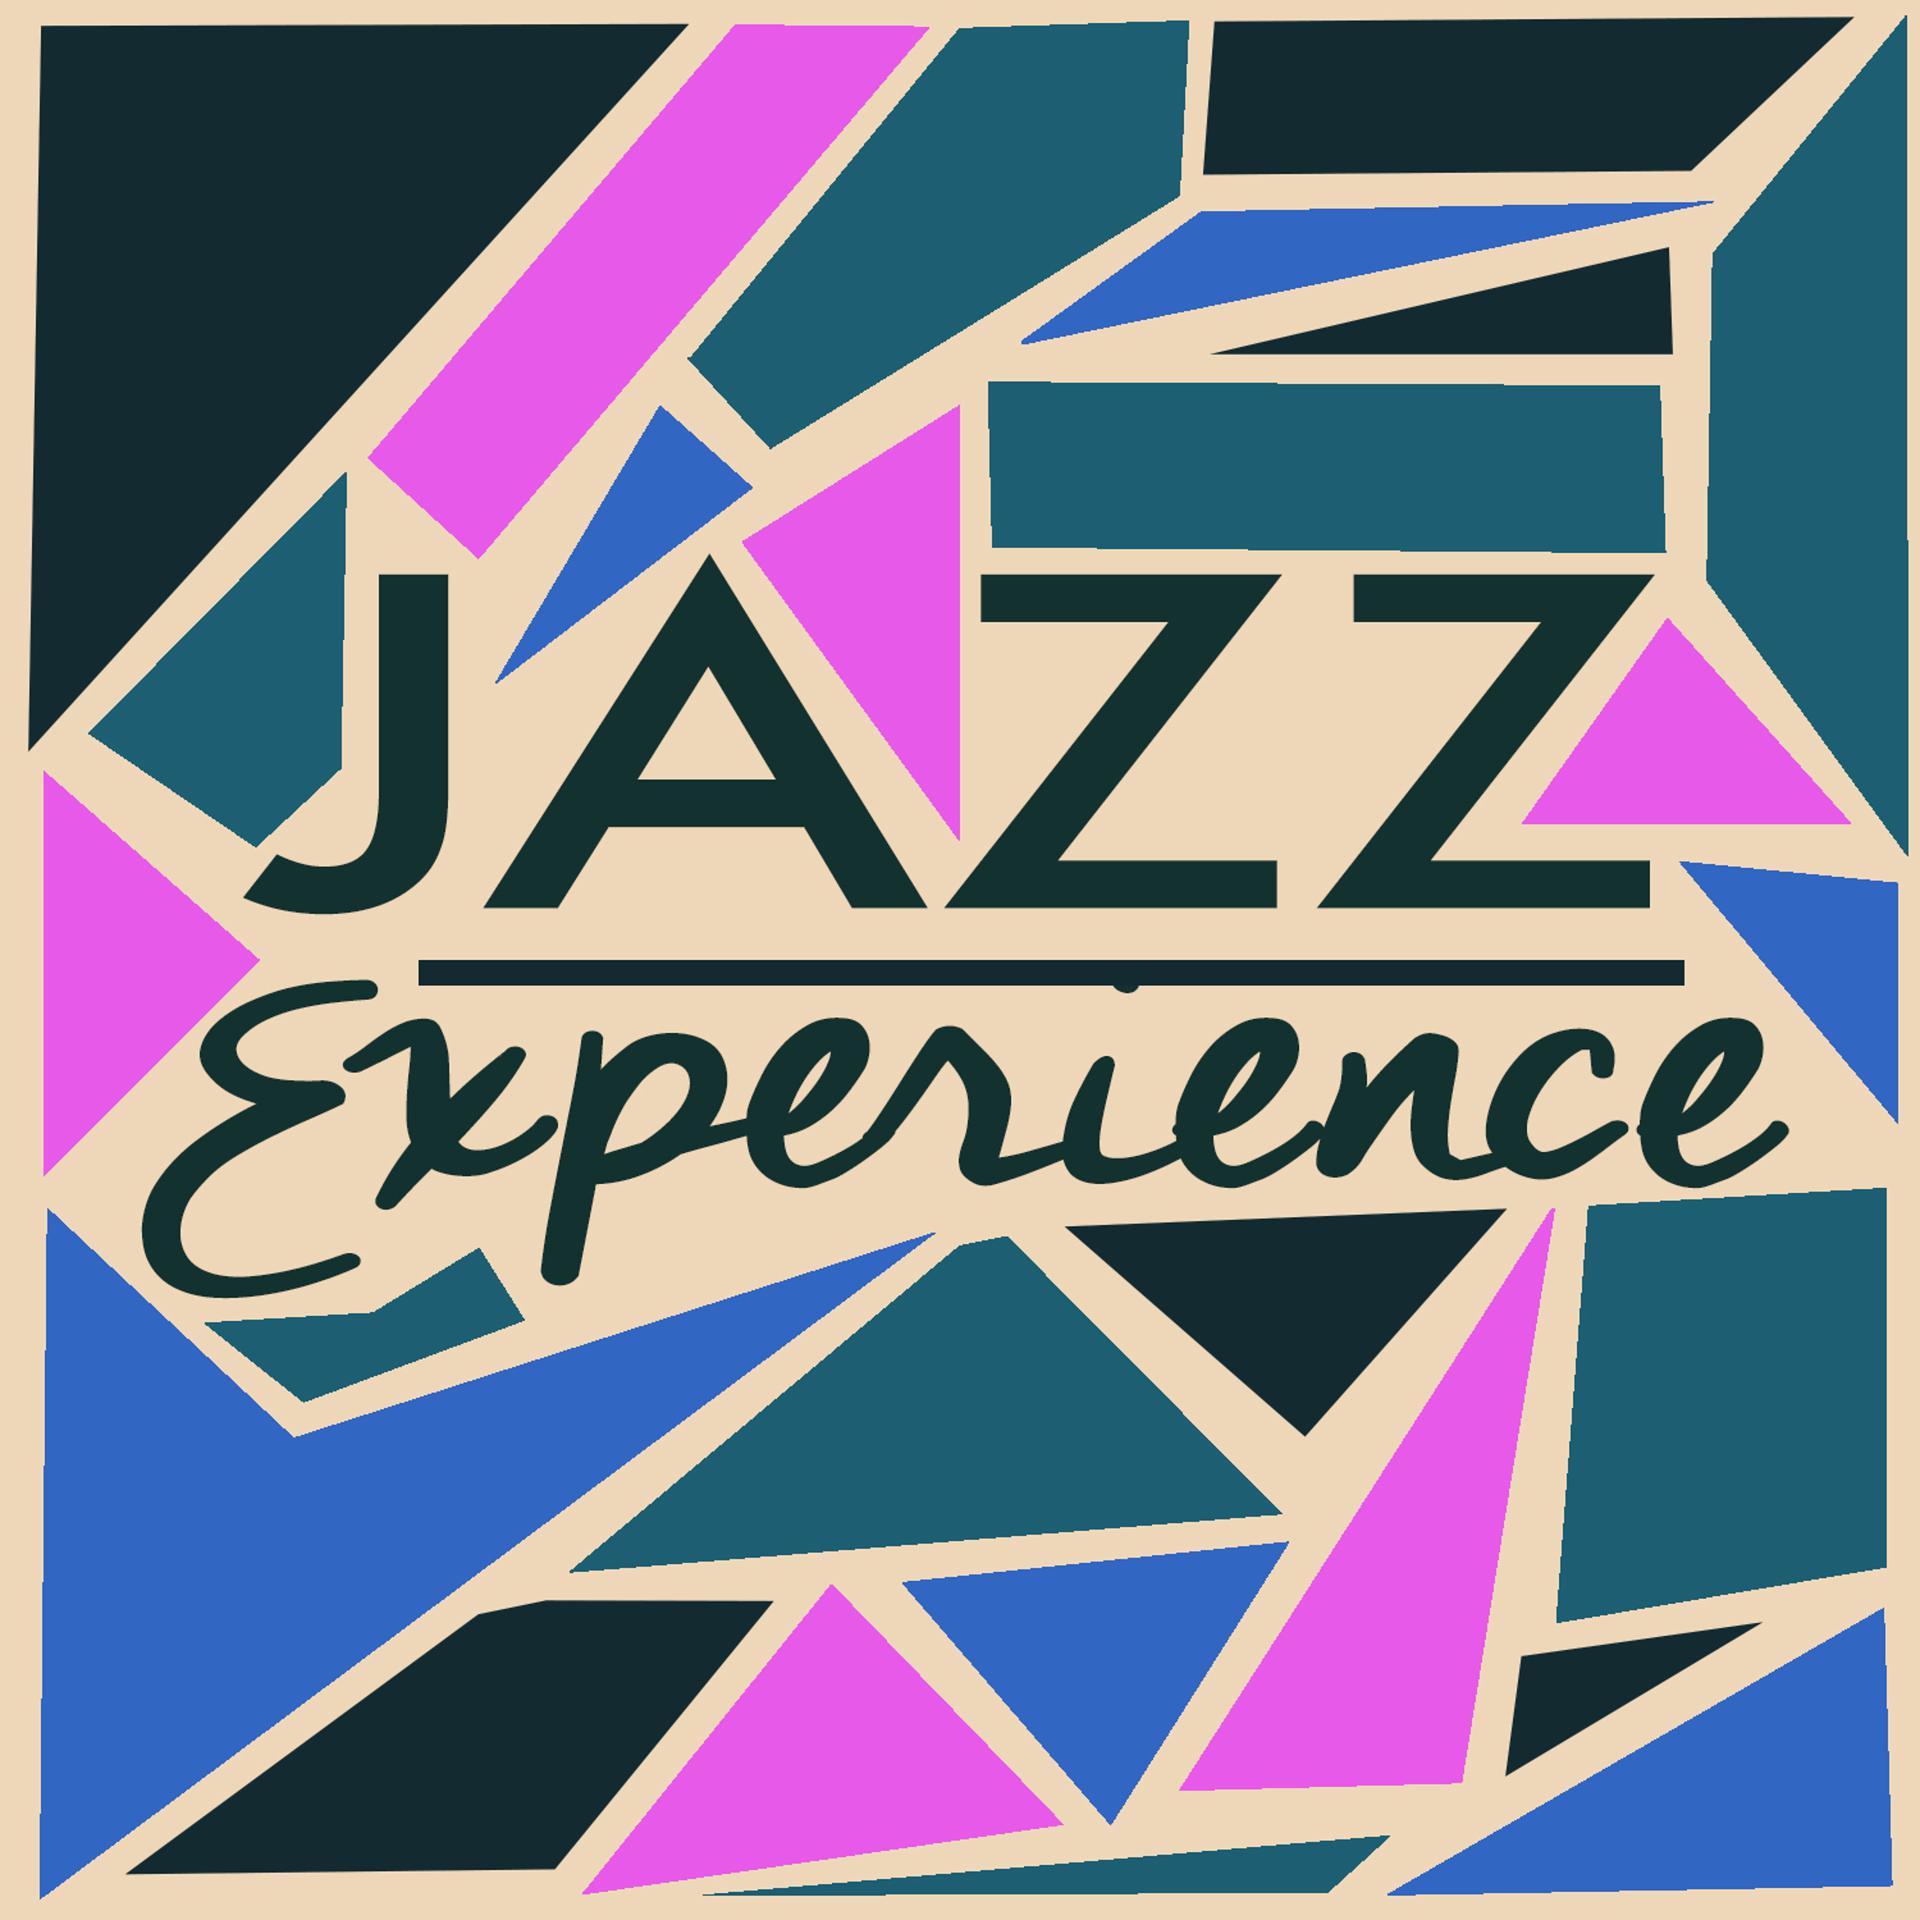 Постер альбома Jazz Experience